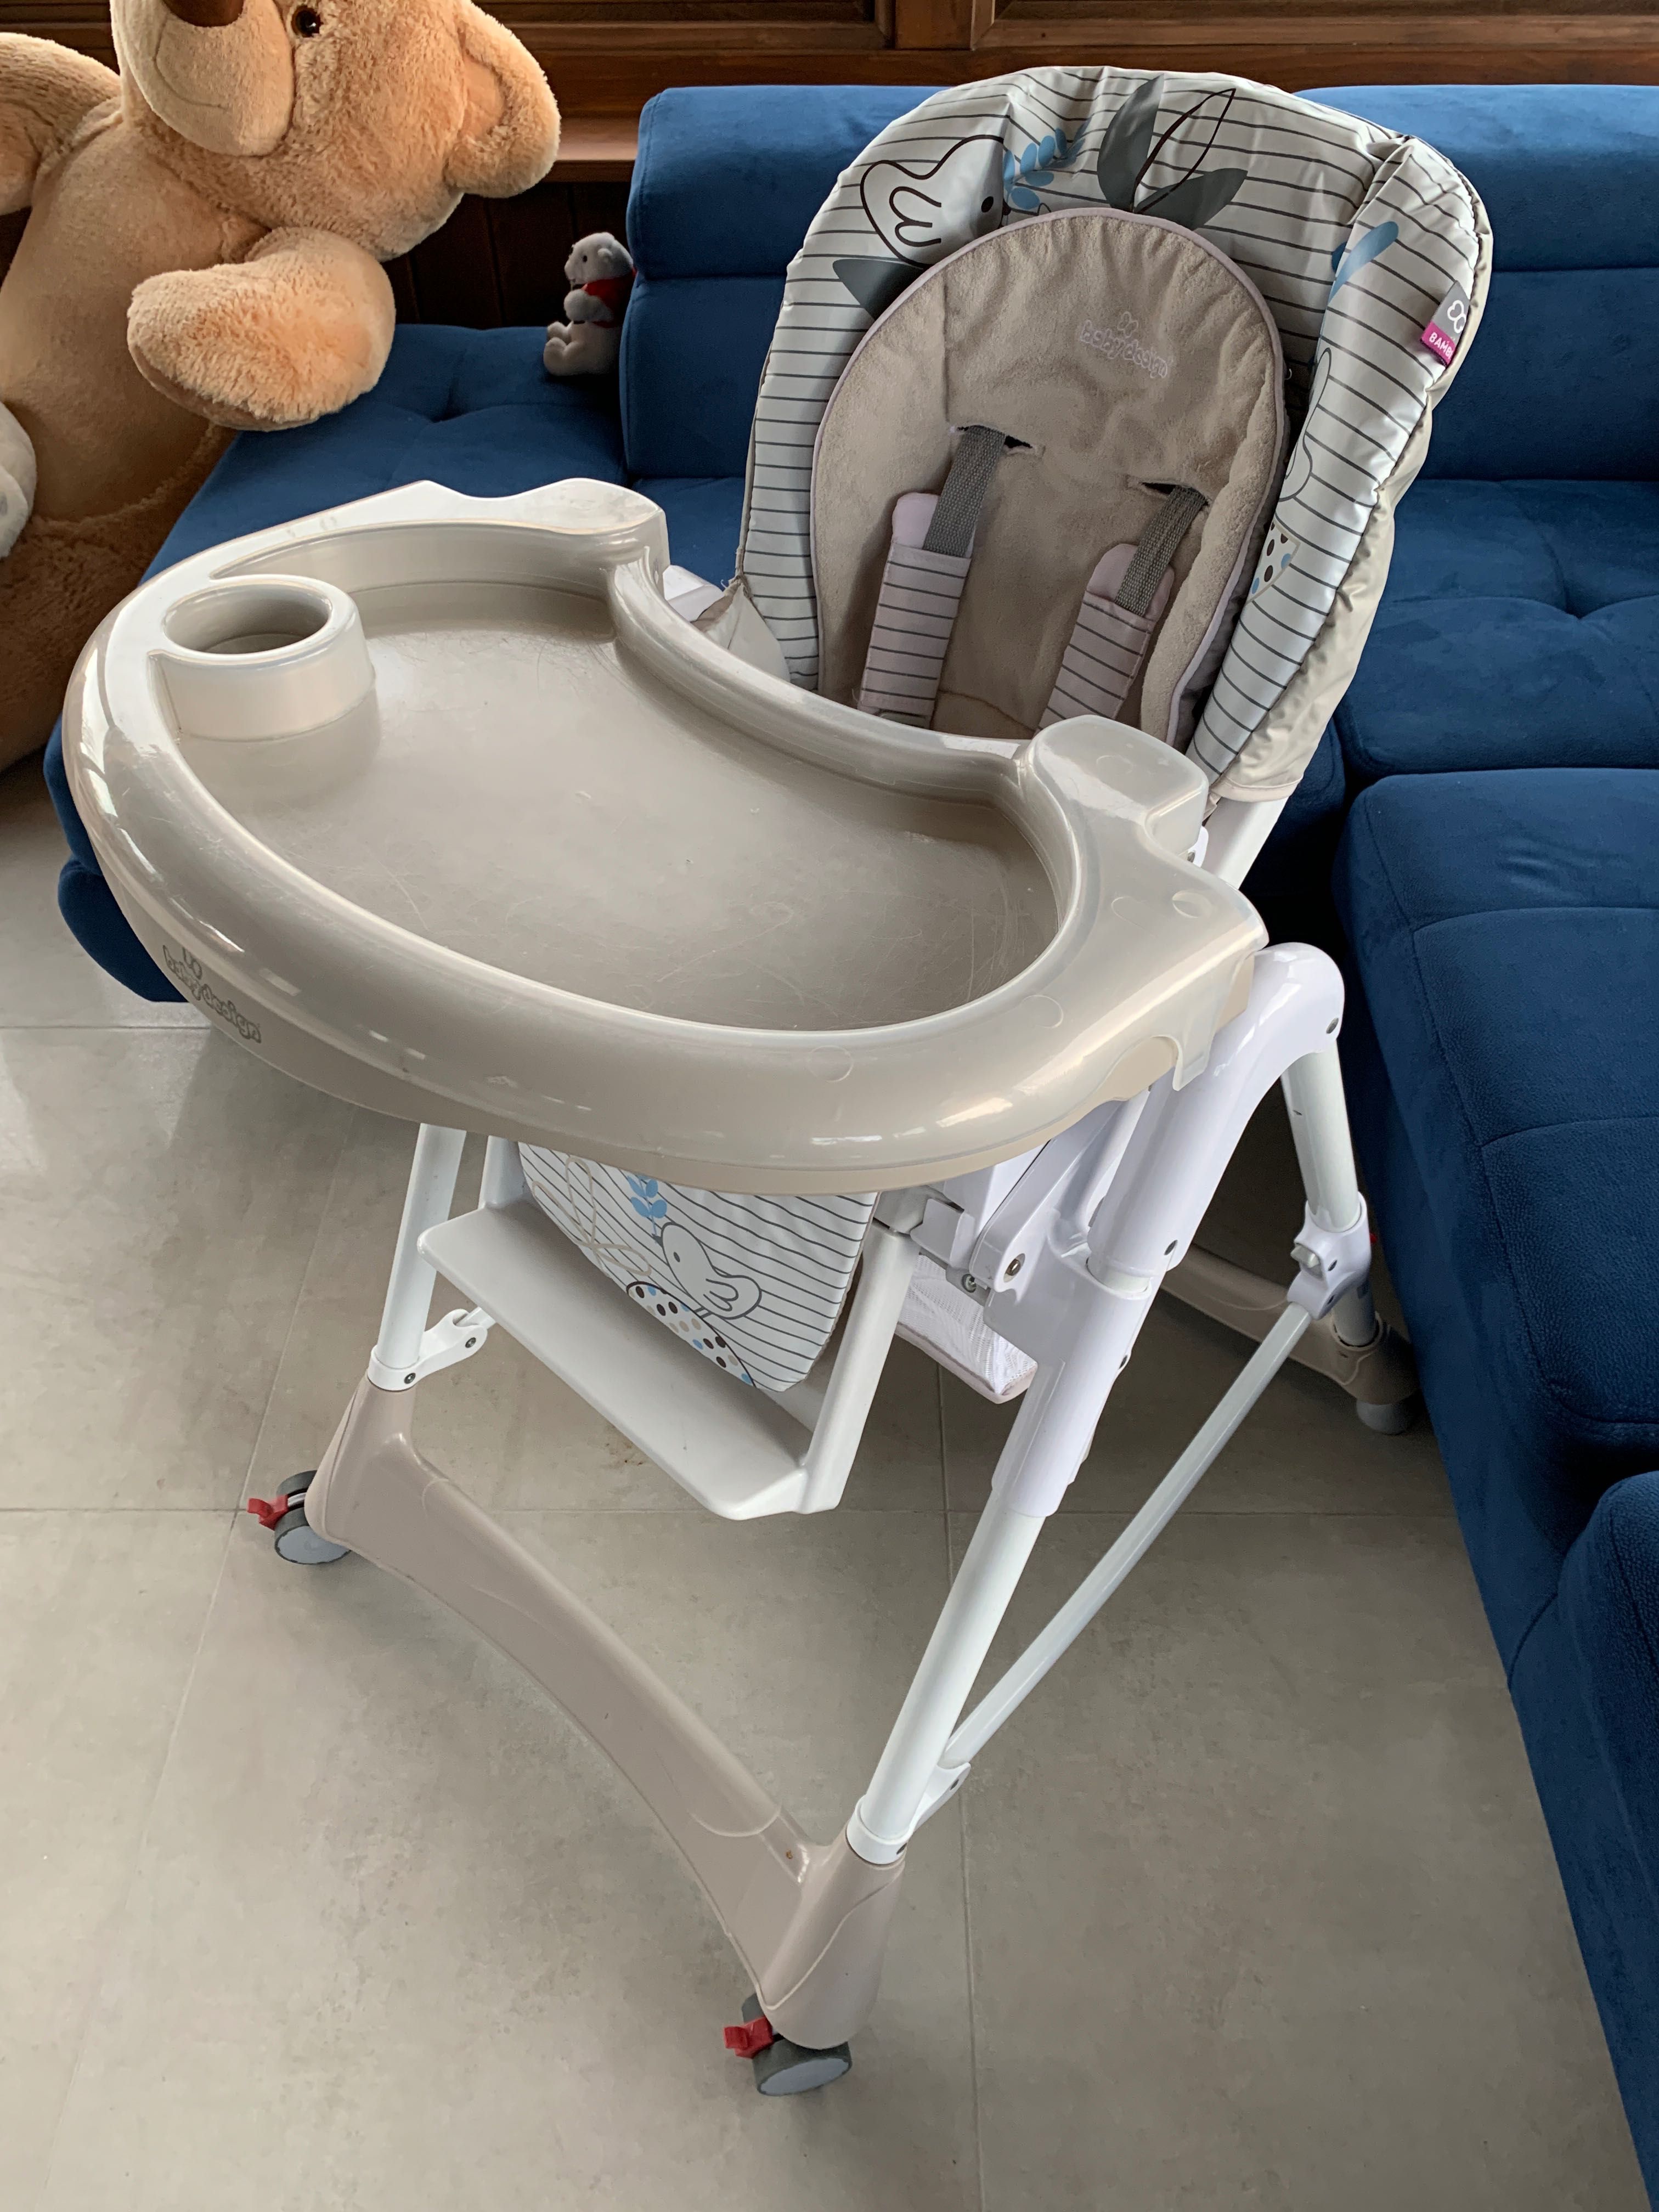 Krzesełko do karmienia Baby Design Bambi